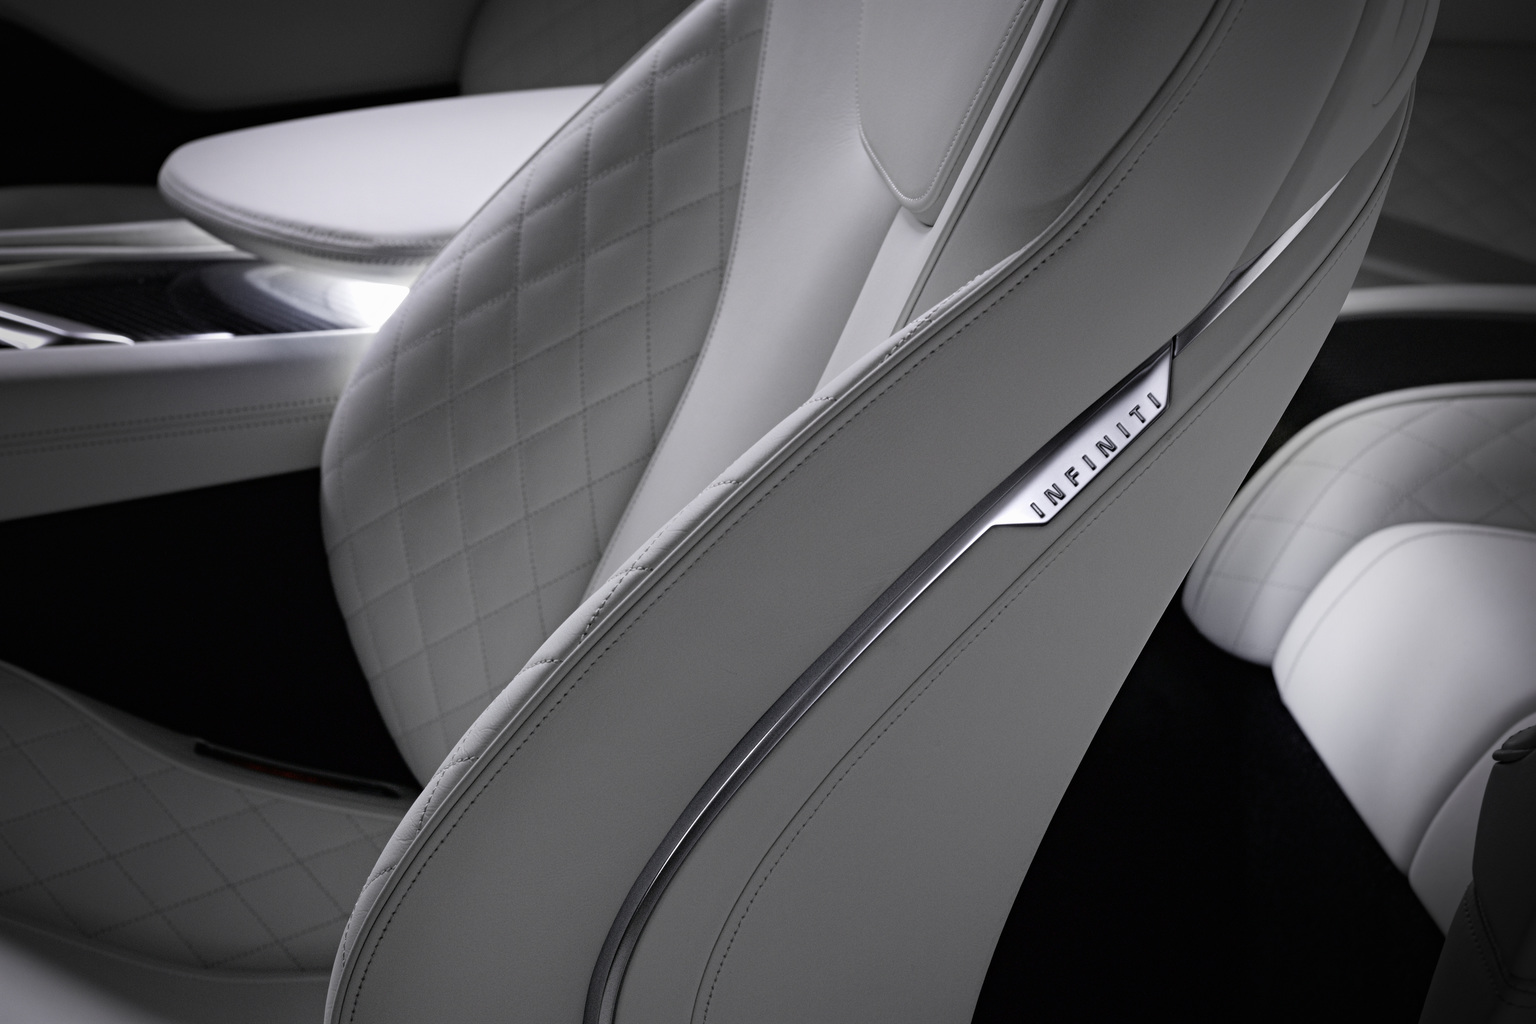 2015 Infiniti Q60 Concept